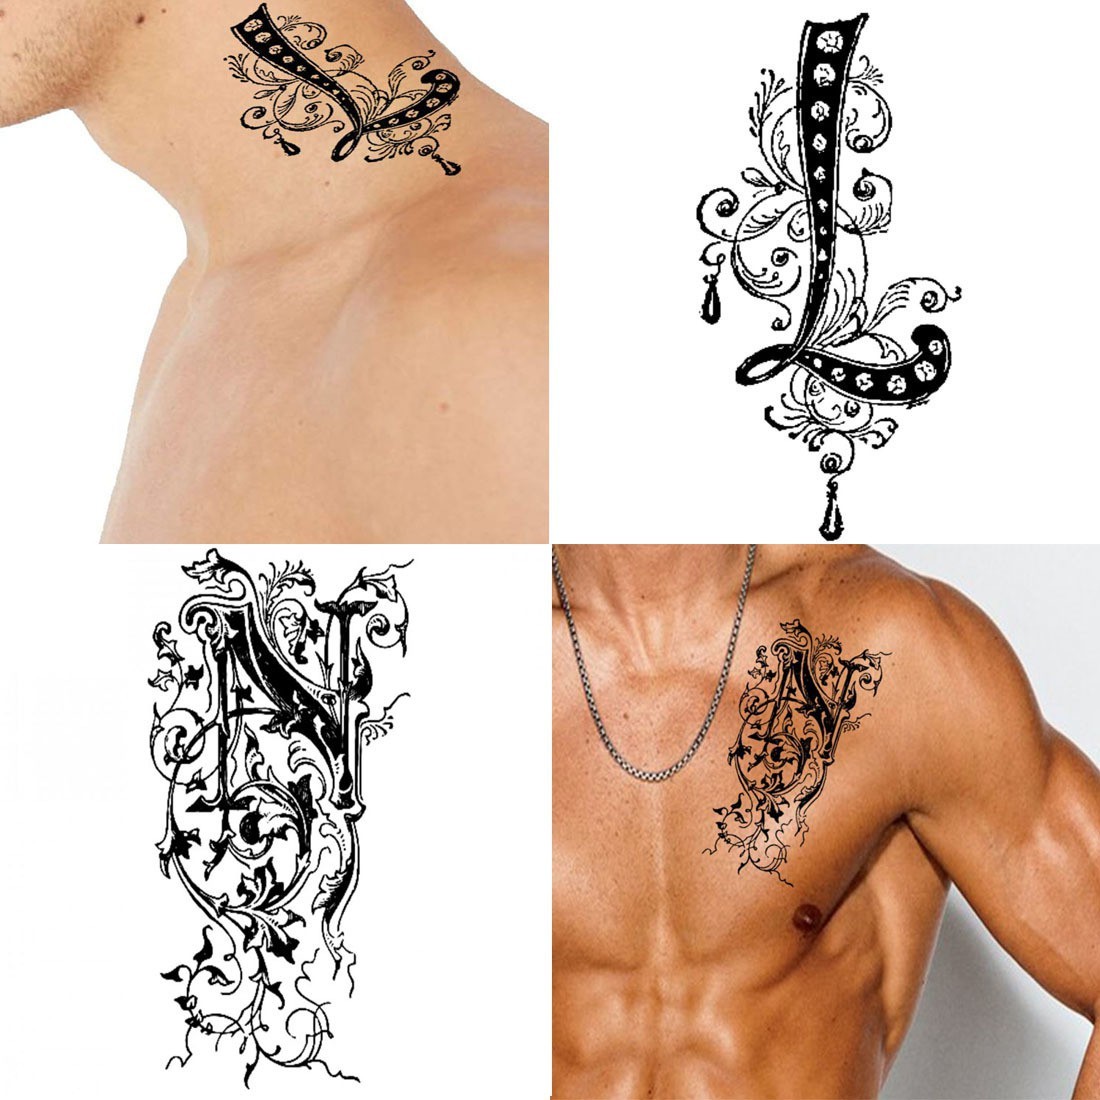 Buy Ordershock Waterproof LV Name Letter Temporary Body Tattoo